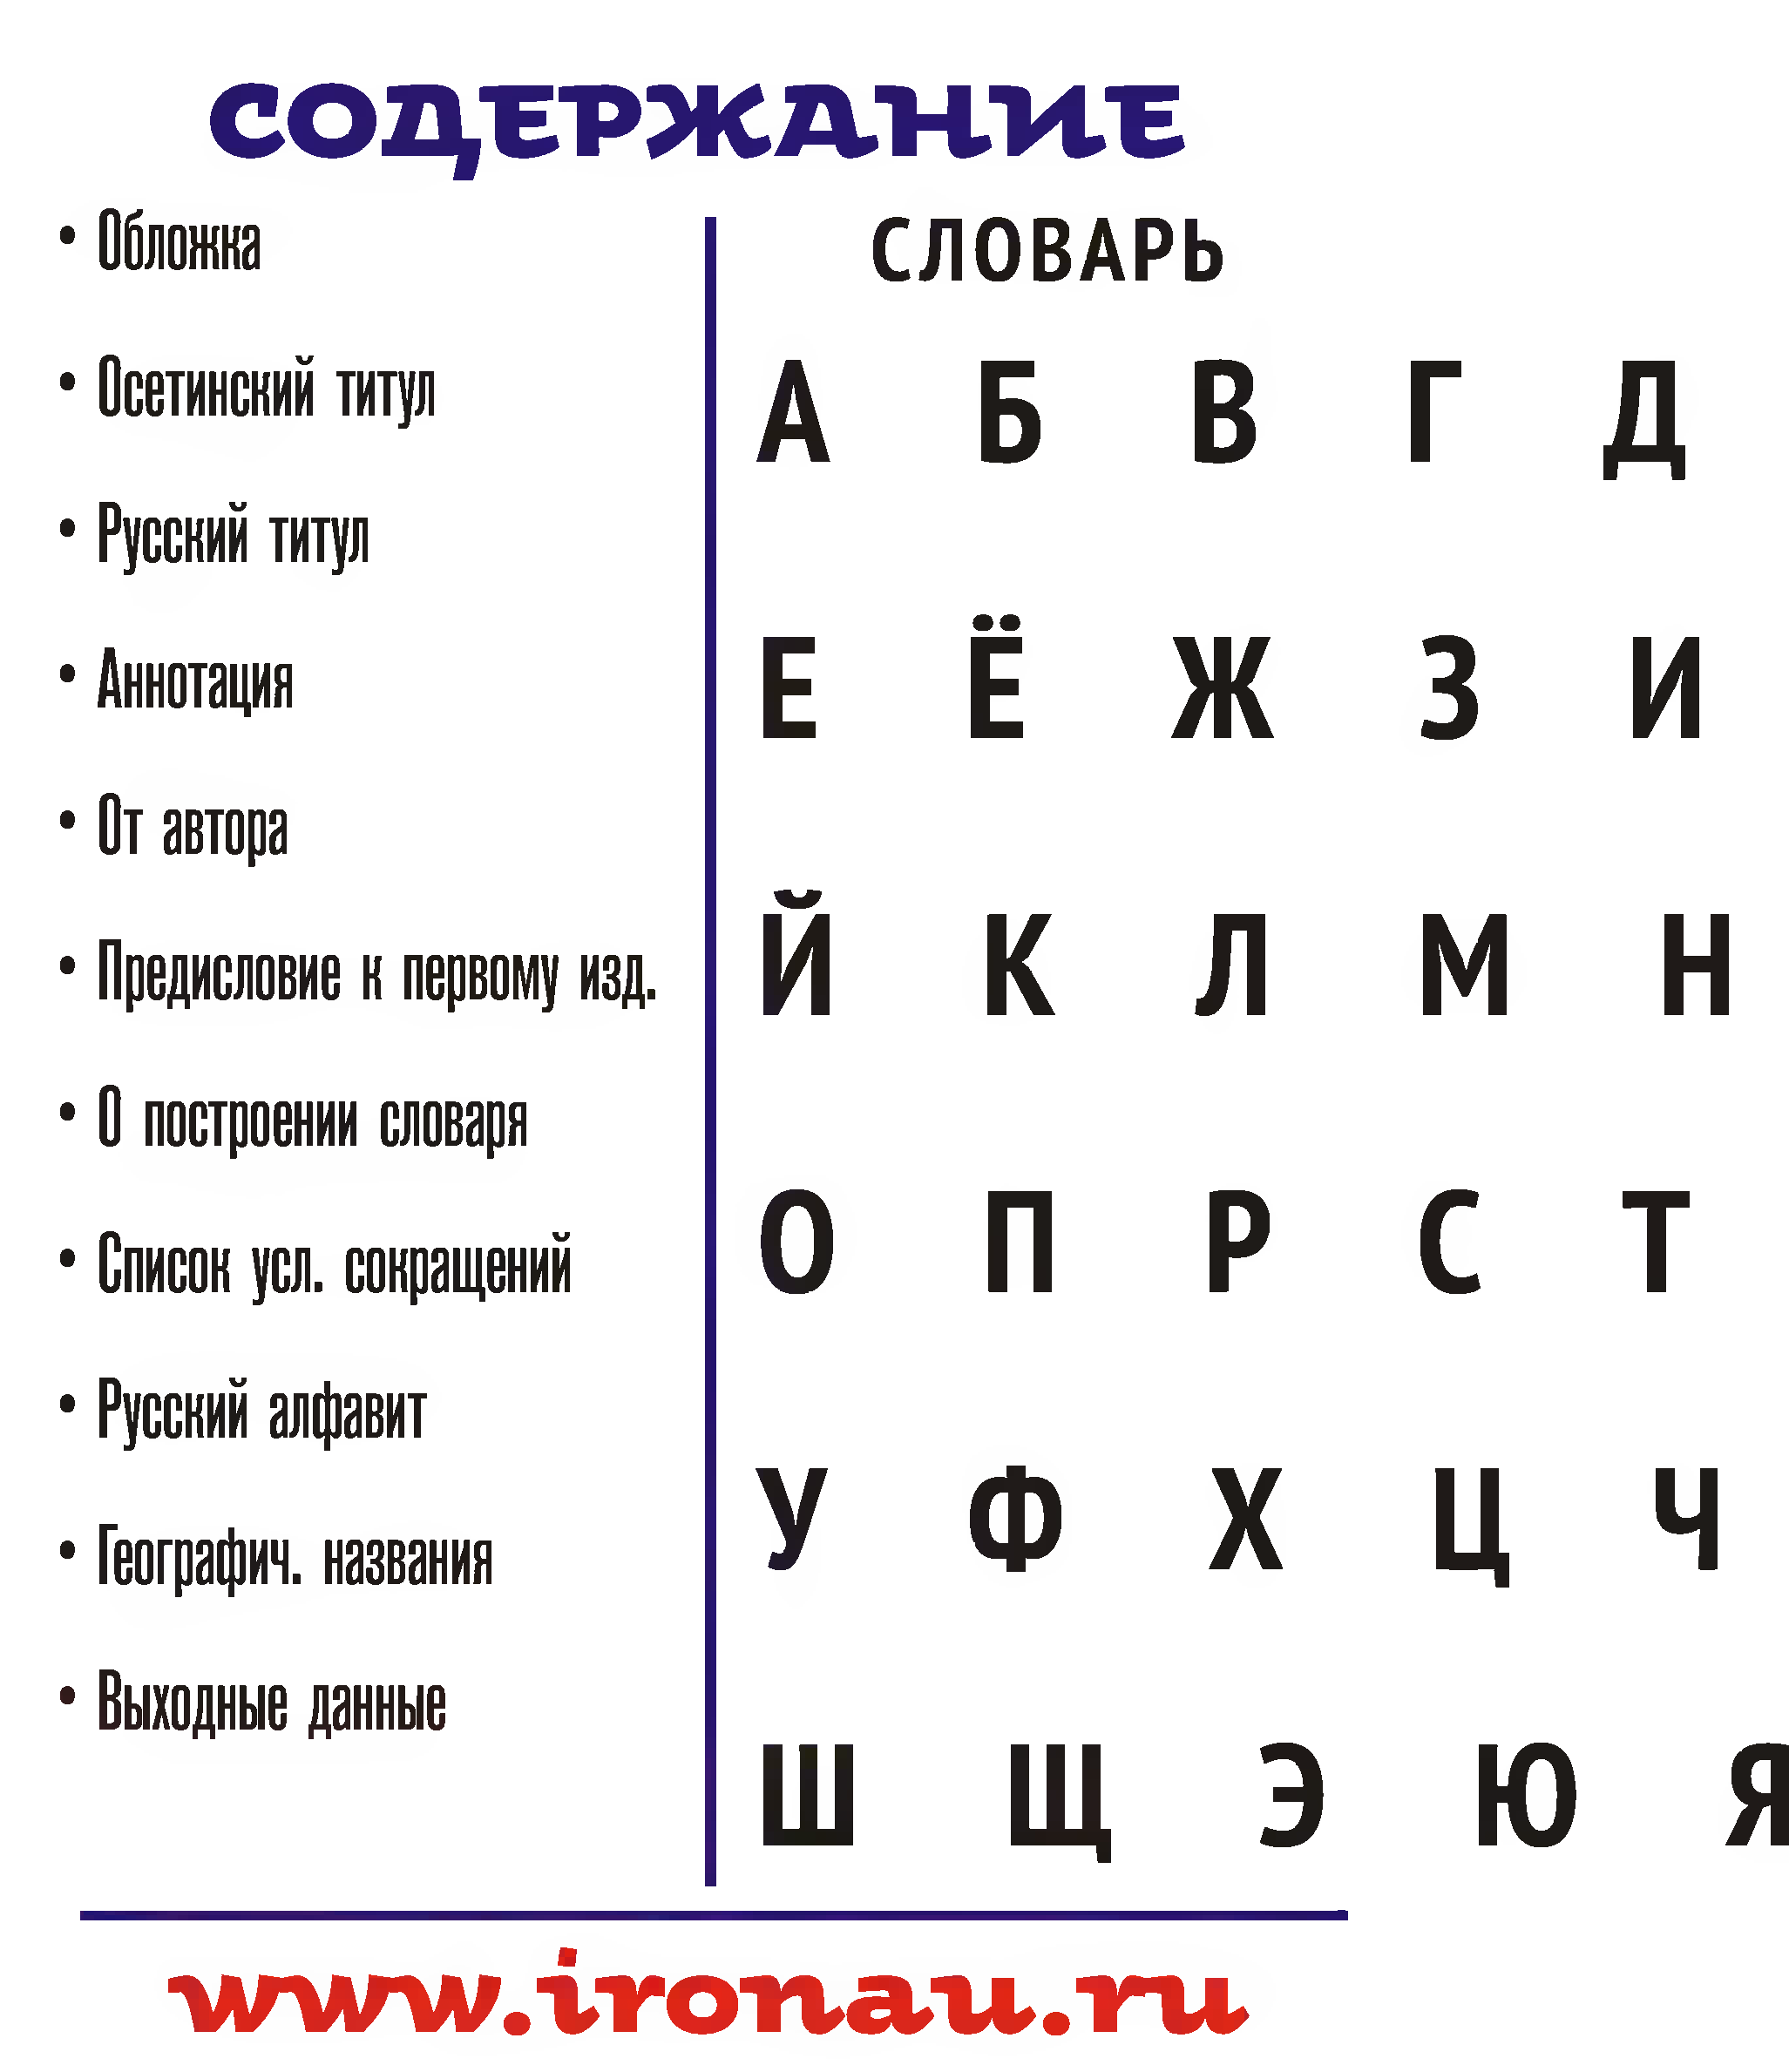 Перевод текста с осетинского на русский по фото